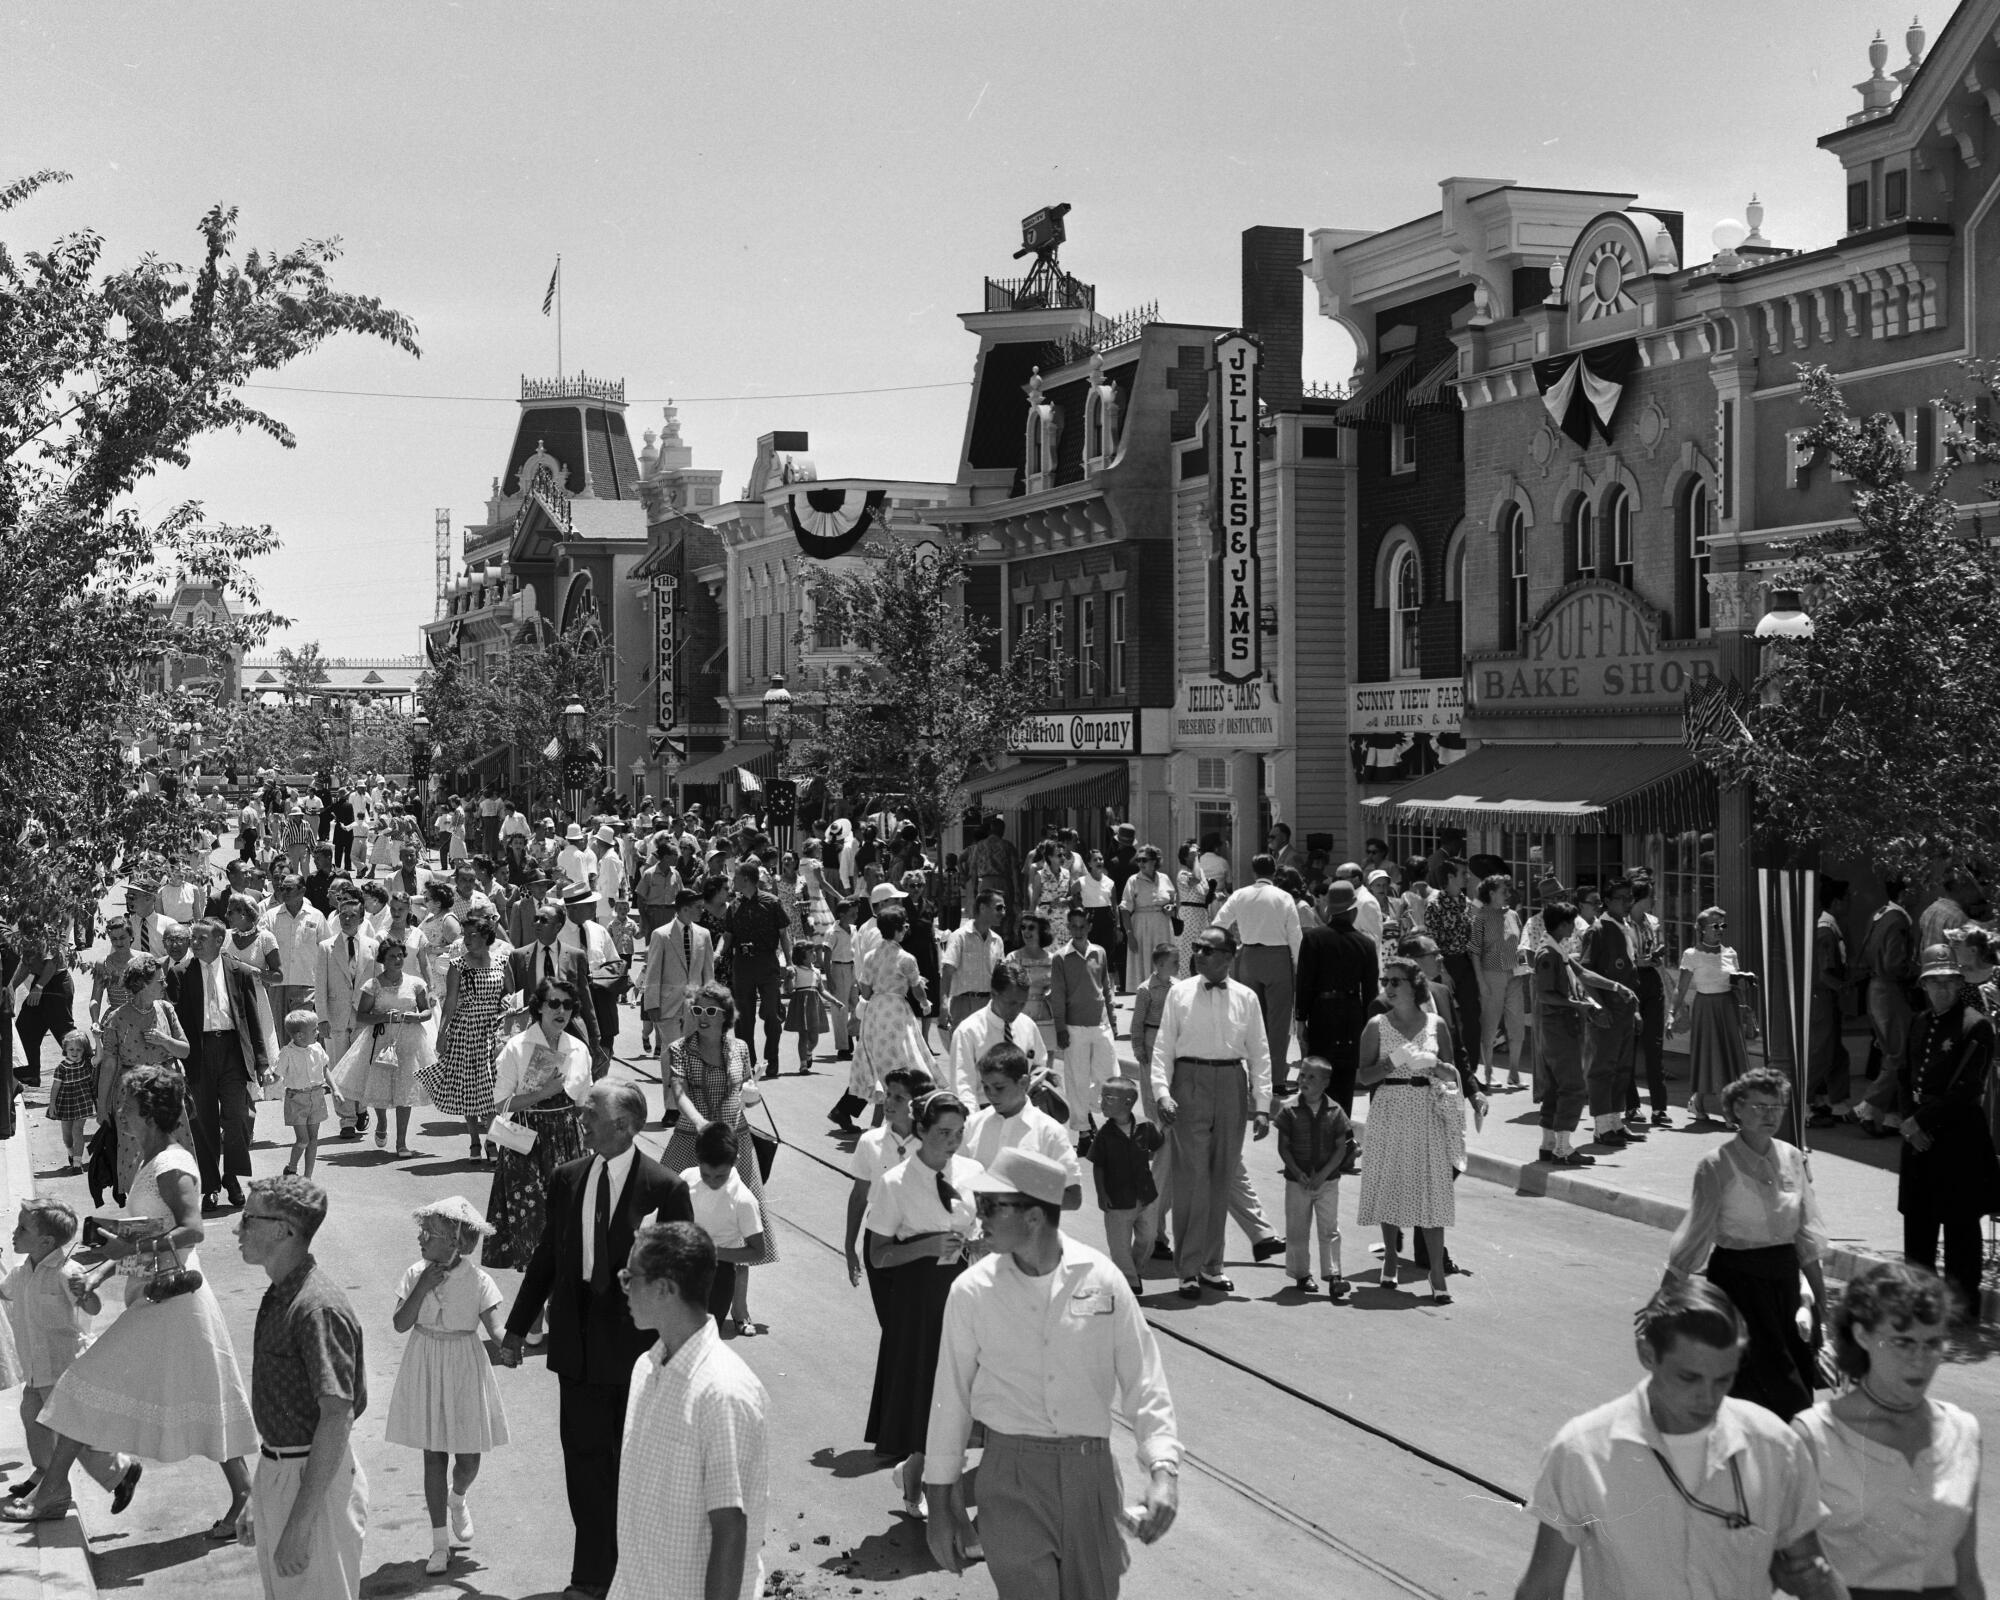 People milling on Disneyland's Main Street in 1955.